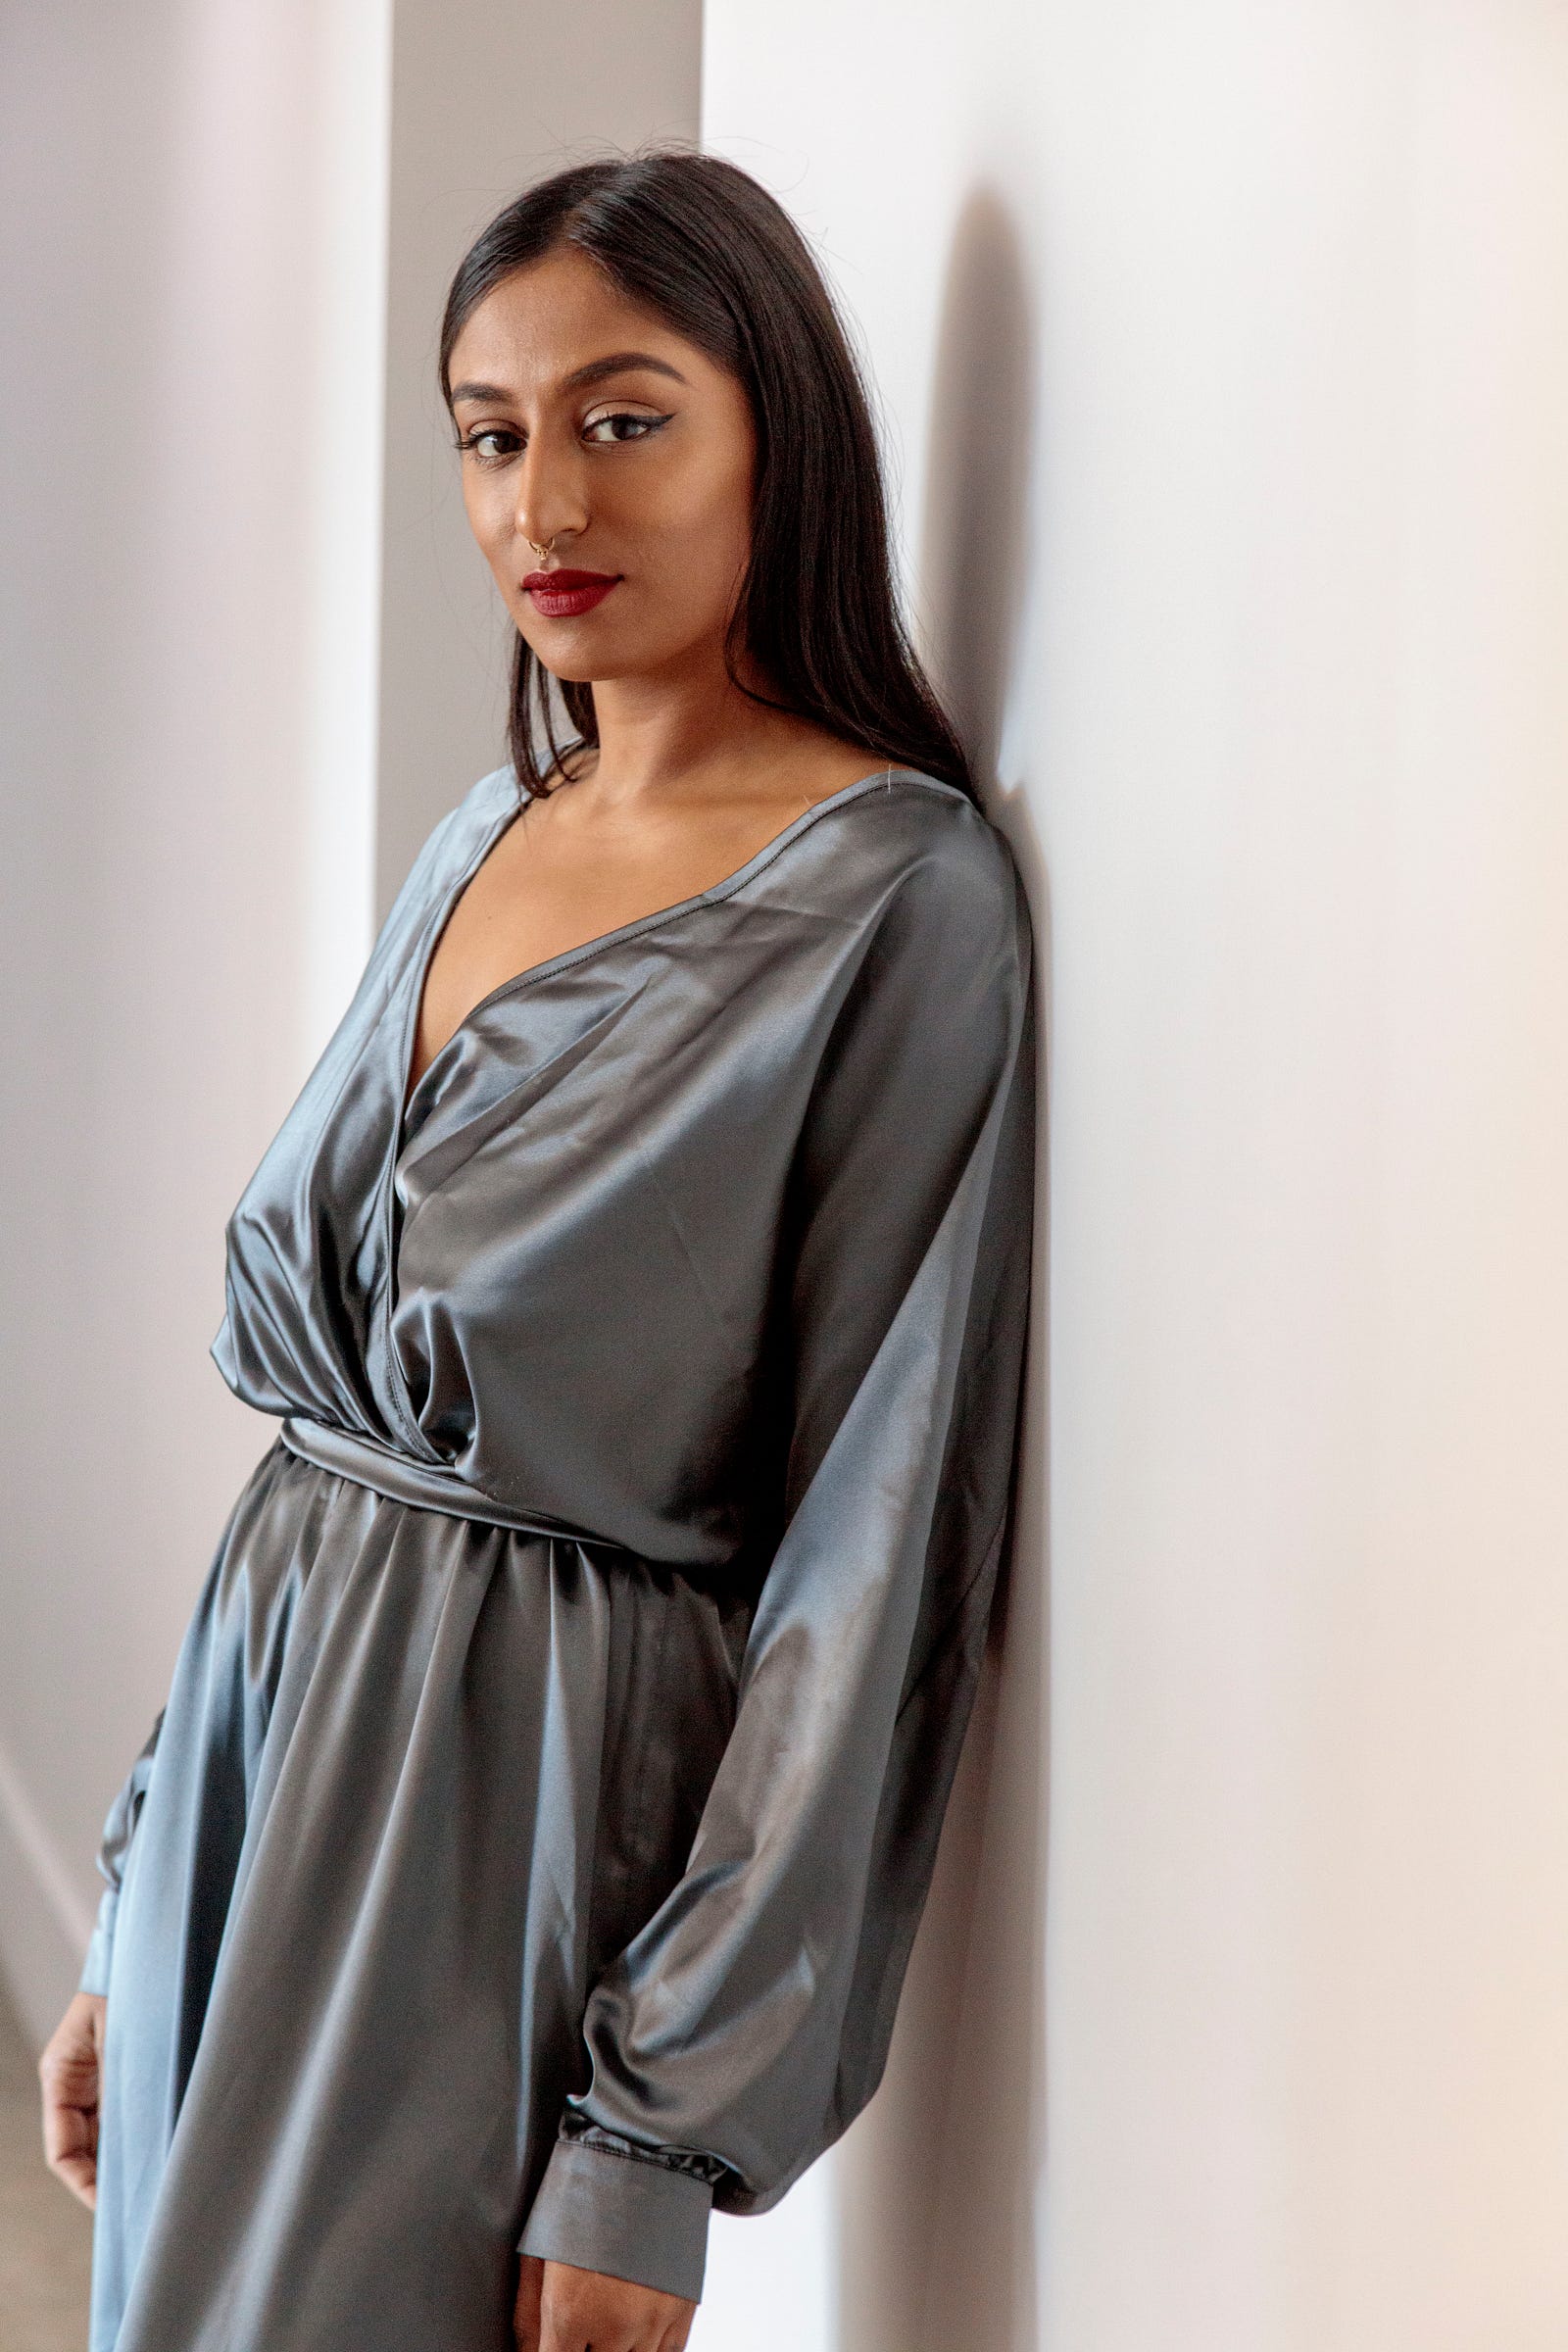 Pavana Reddy looking stunning in Bastet Noir’s dark grey jumpsuit, photo by: Joshua White